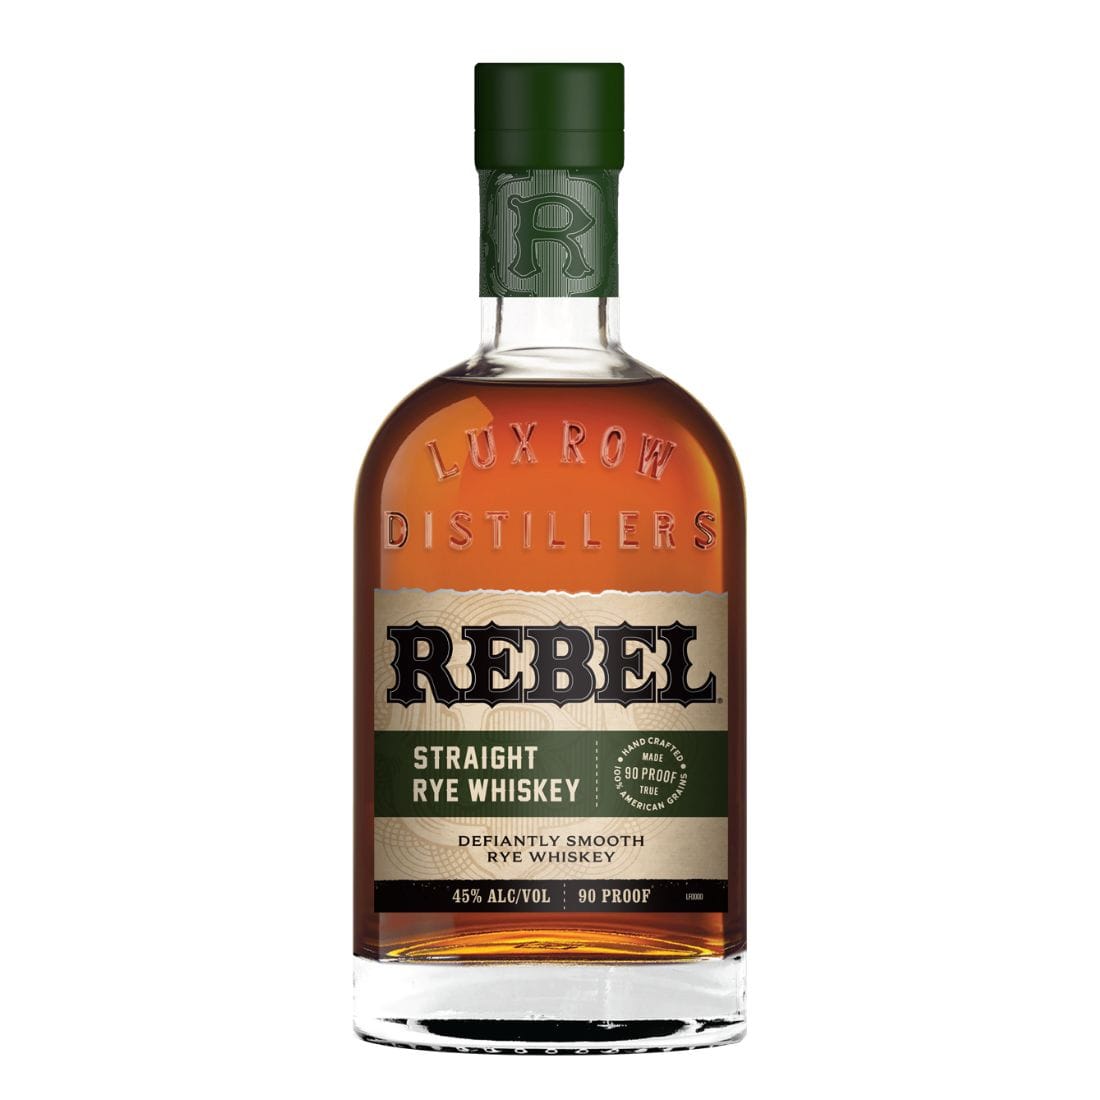 Rebel Straight Rye Whiskey